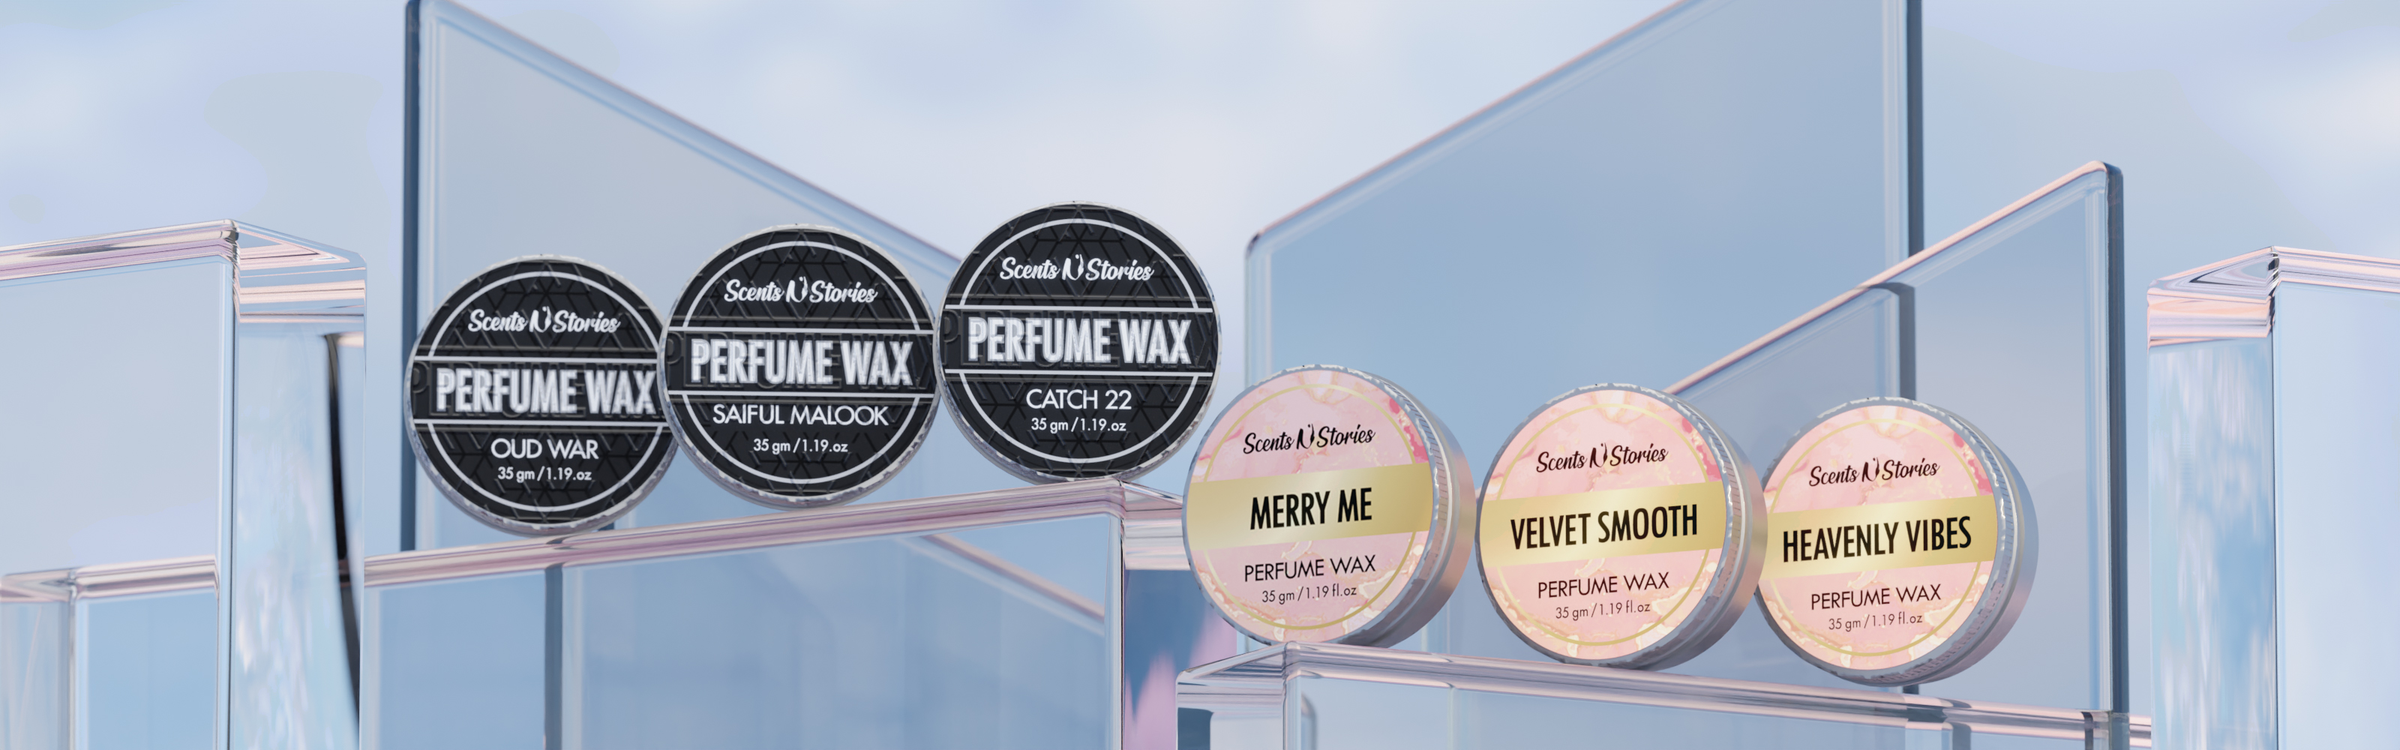 perfume wax